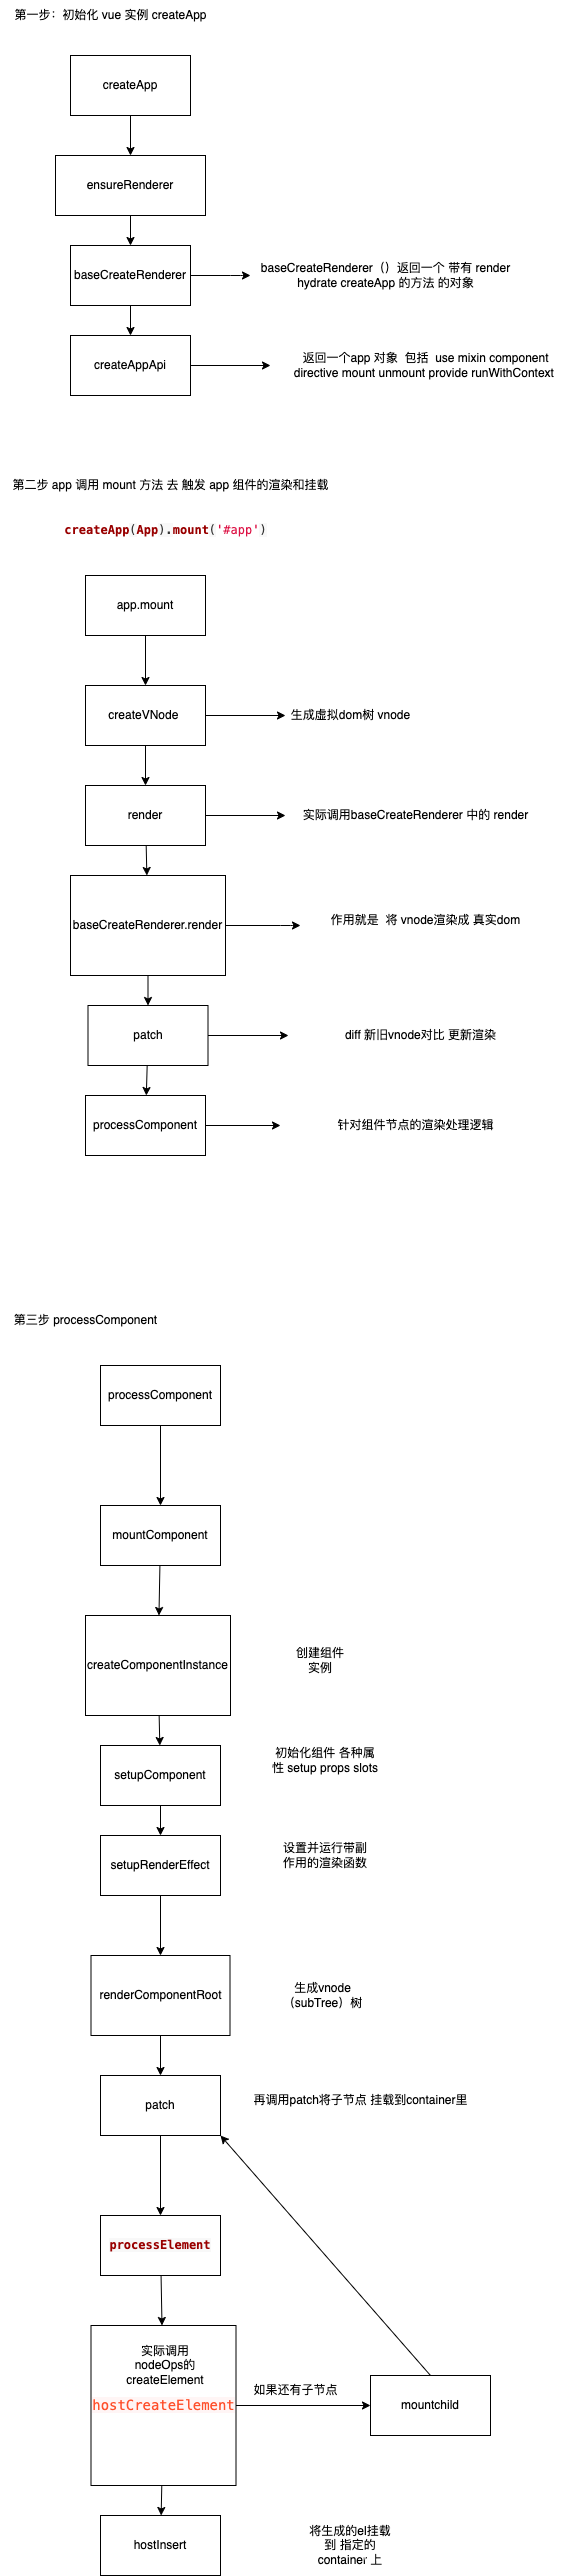 vue3学习源码笔记（小白入门系列）------ 组件是如何渲染成dom挂载到指定位置的？